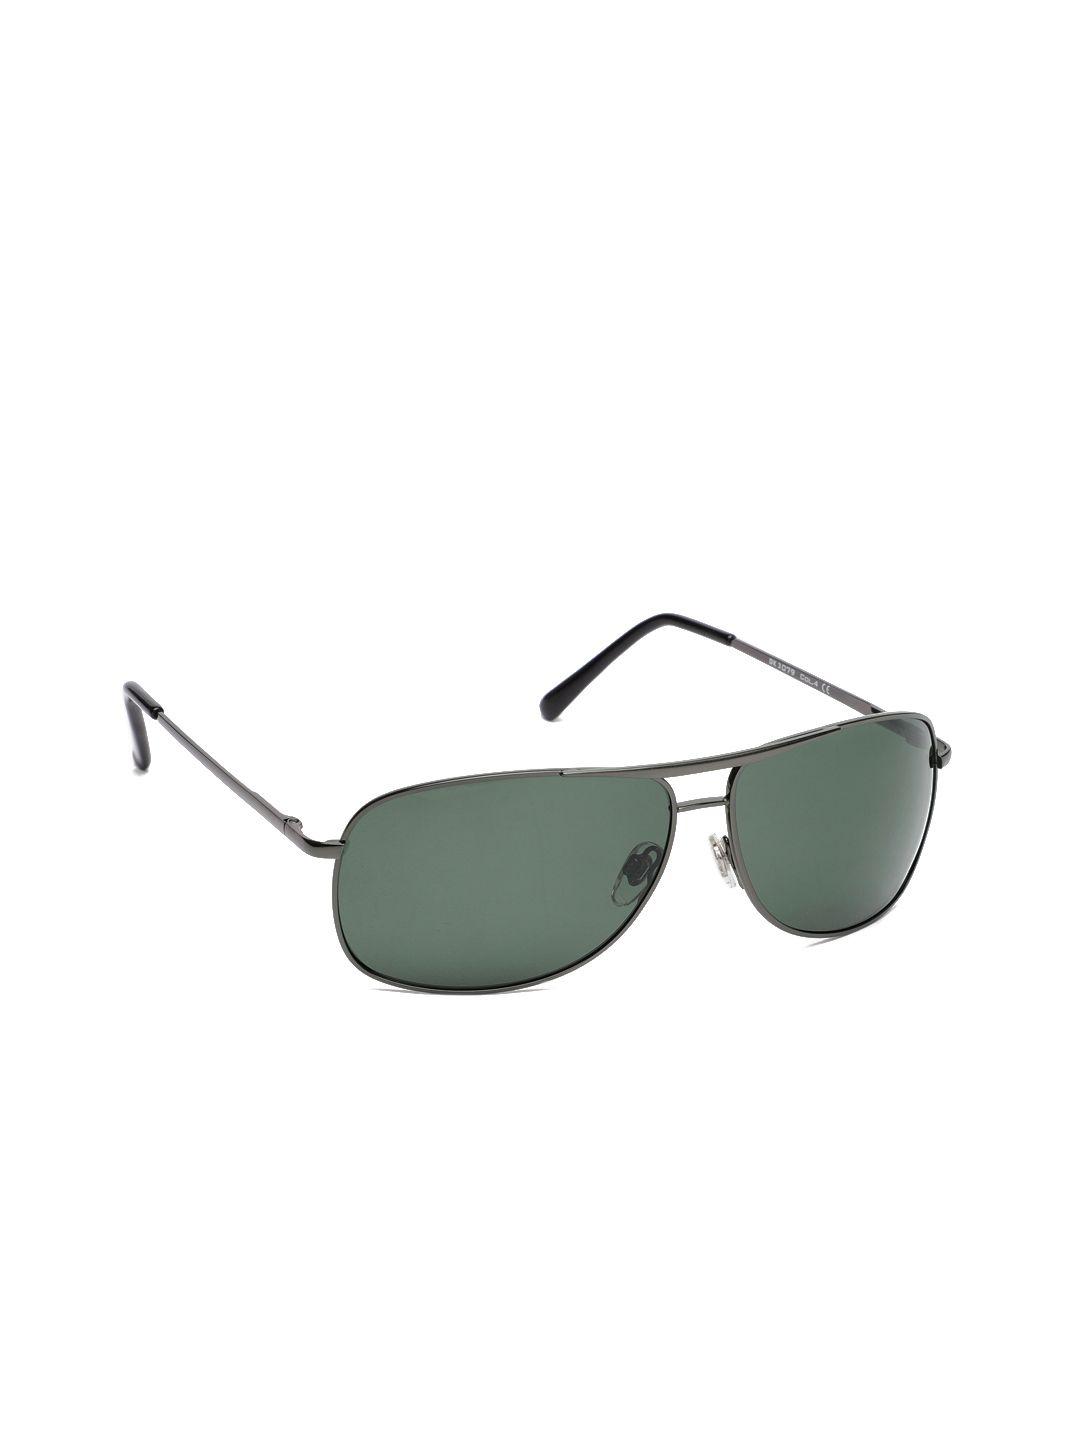 daniel klein women rectangle sunglasses dk3079-c4